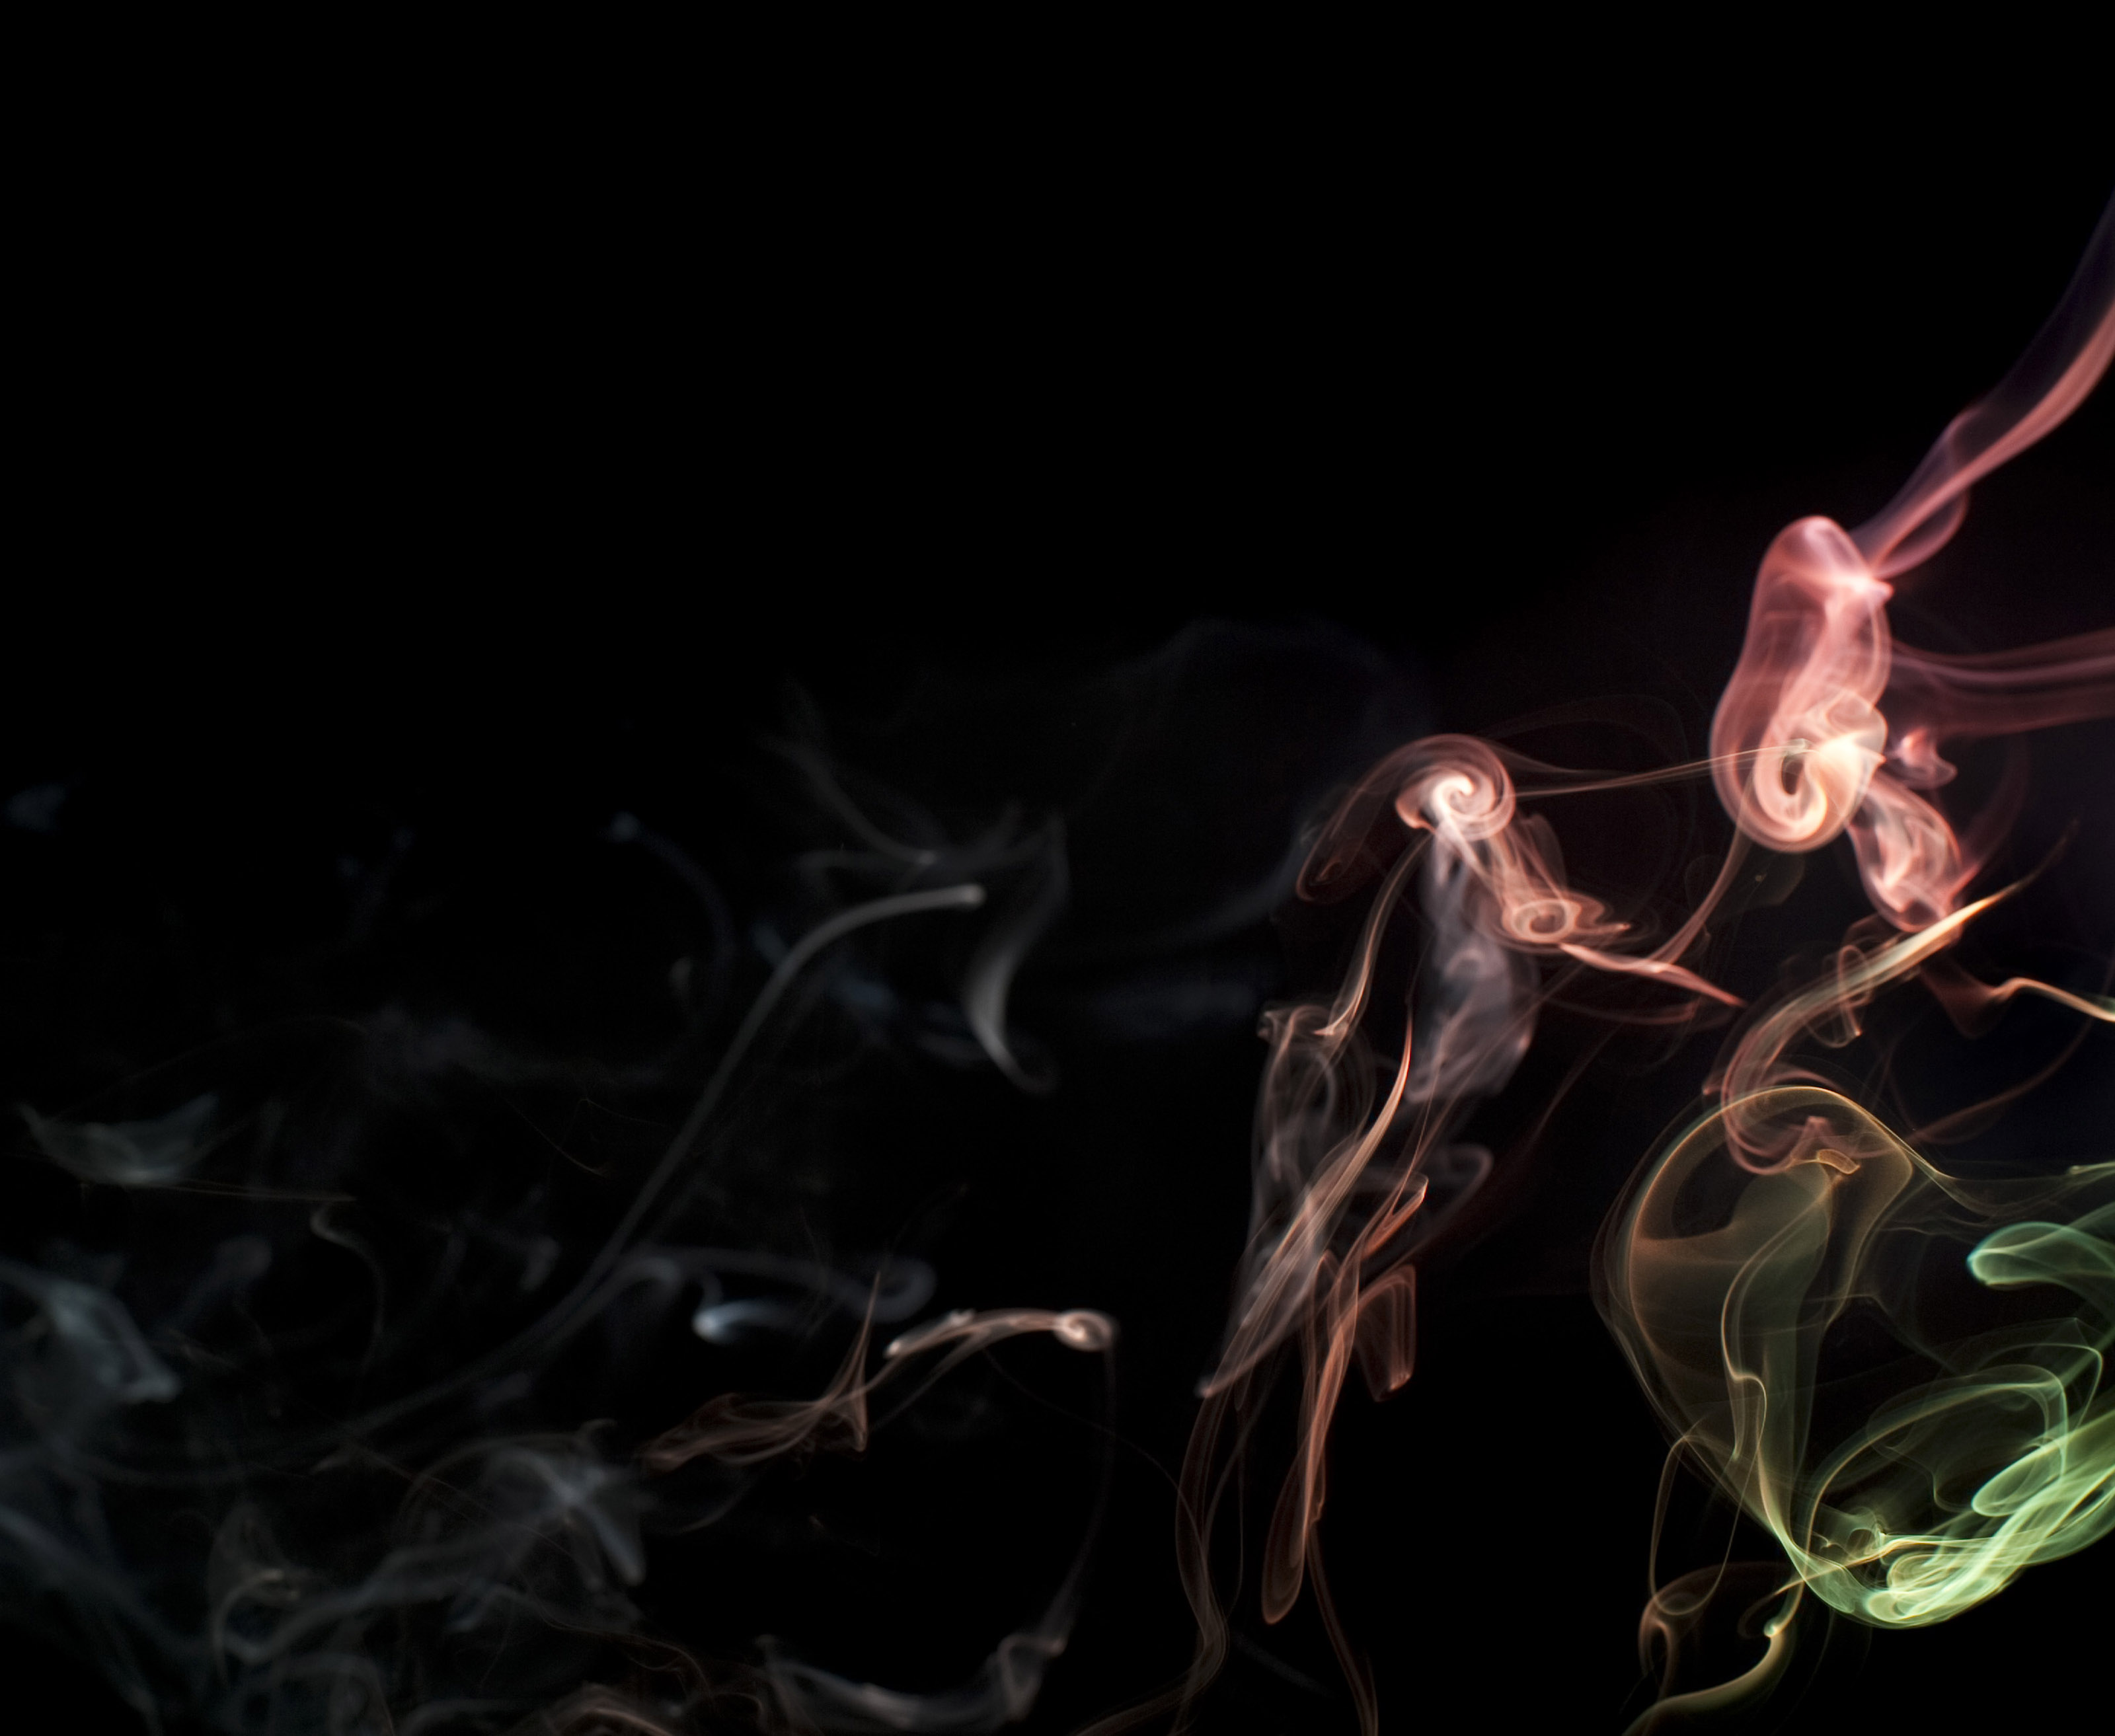 tumblr smoke clouds